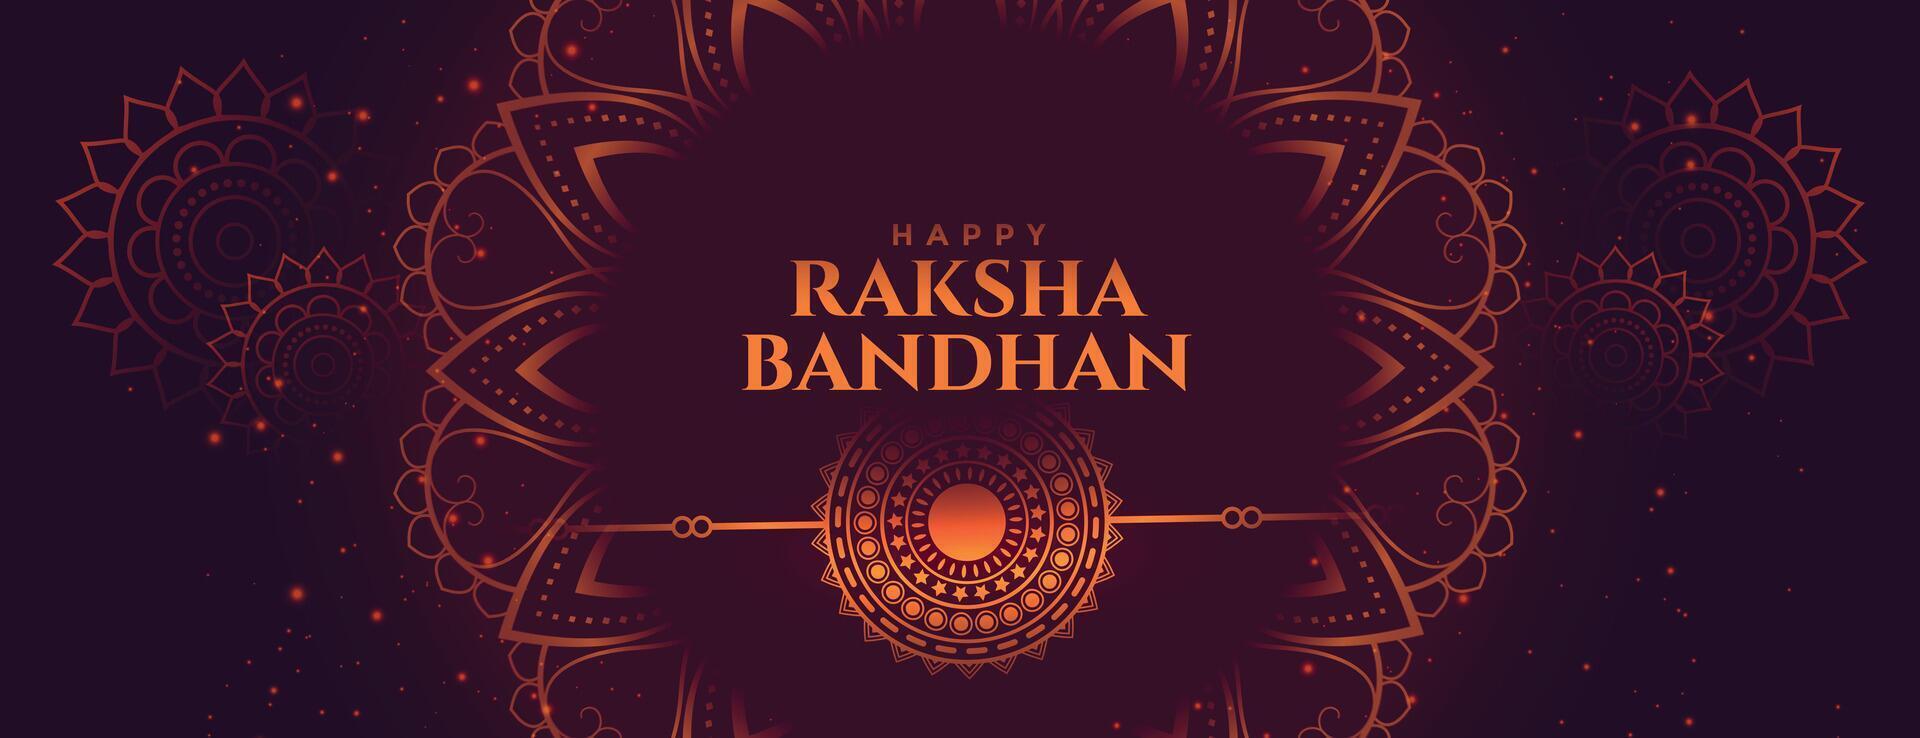 indisk Raksha bandhan festival dekorativ baner design vektor